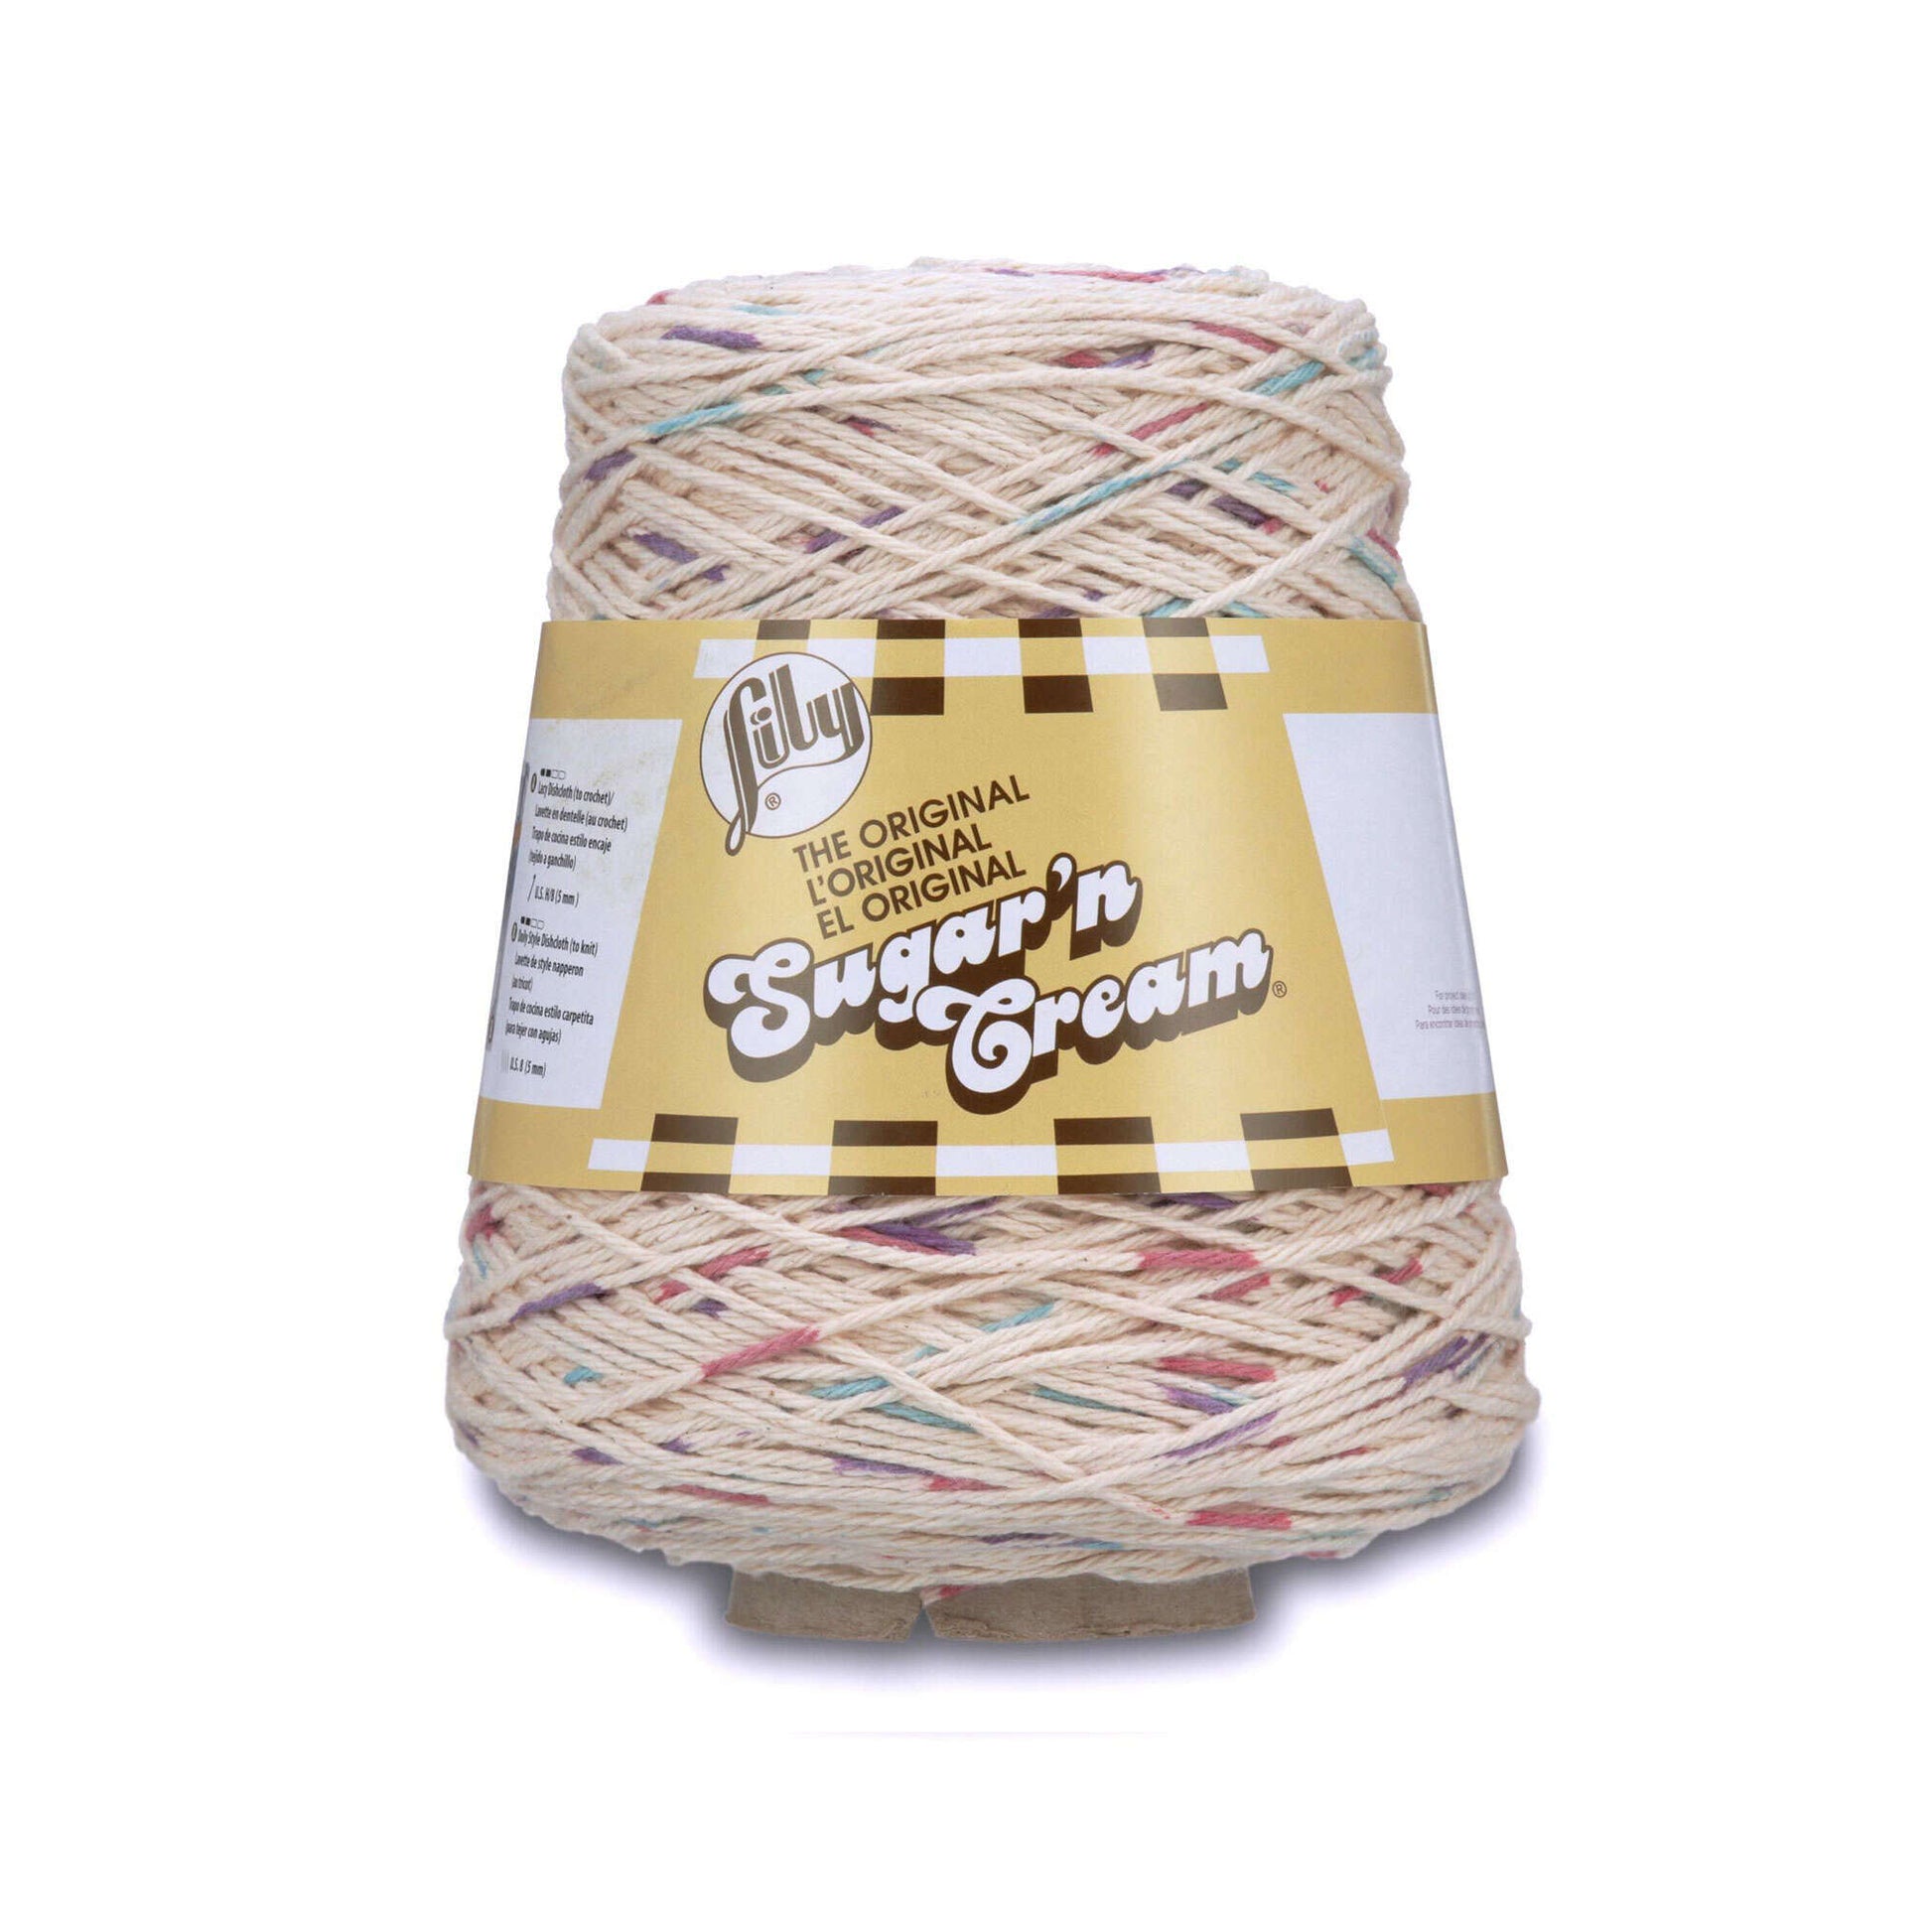  Lily Sugar'n Cream Cotton Cone Yarn, 14 oz, Soft Ecru, 1 Cone